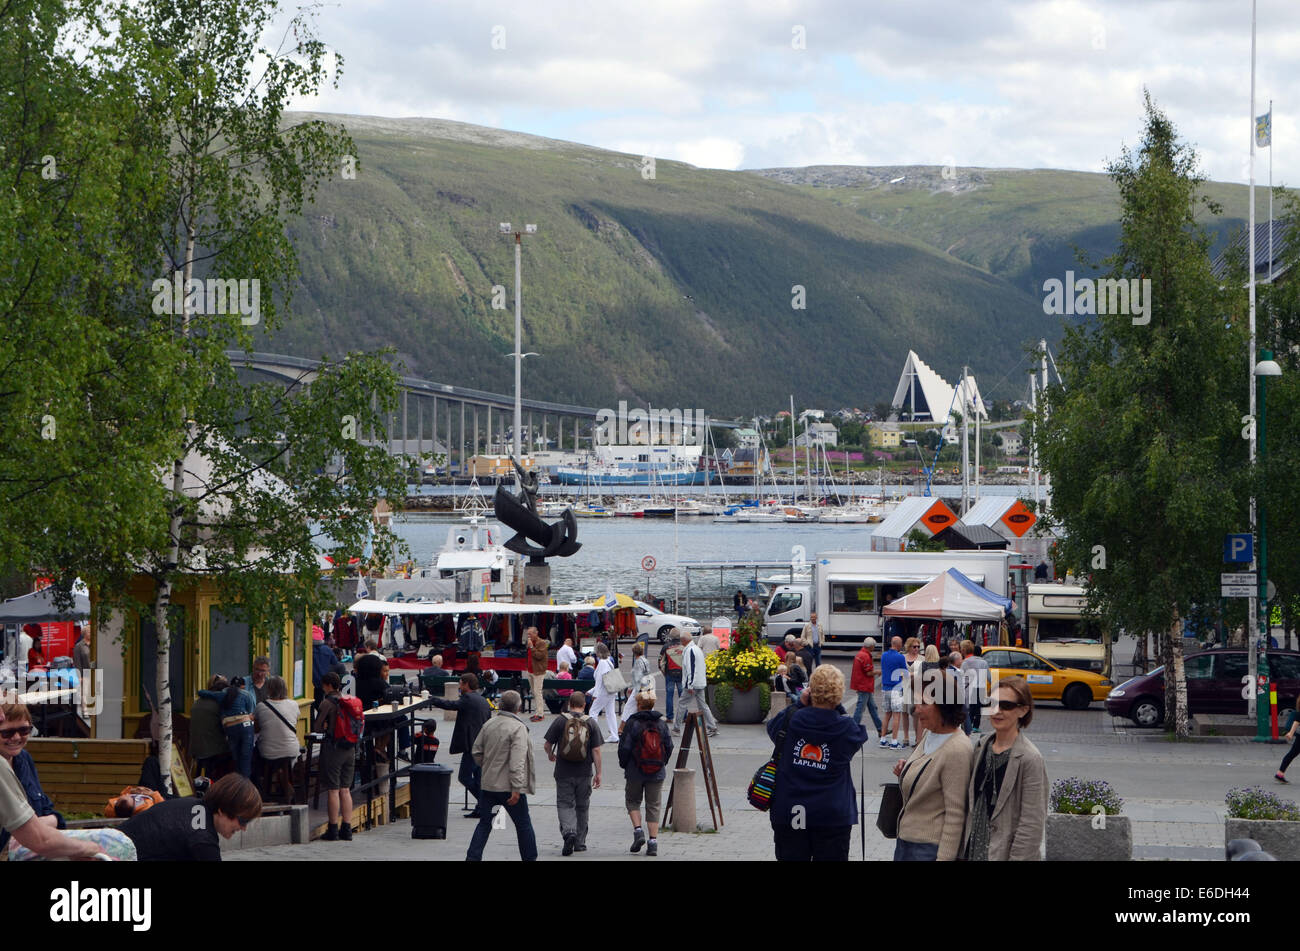 Le centre-ville de Tromso,personnes shopping.ville populaire pour RoaldAmundsen, étant plus au nord , ArcticCathedral,festivals modernes Banque D'Images